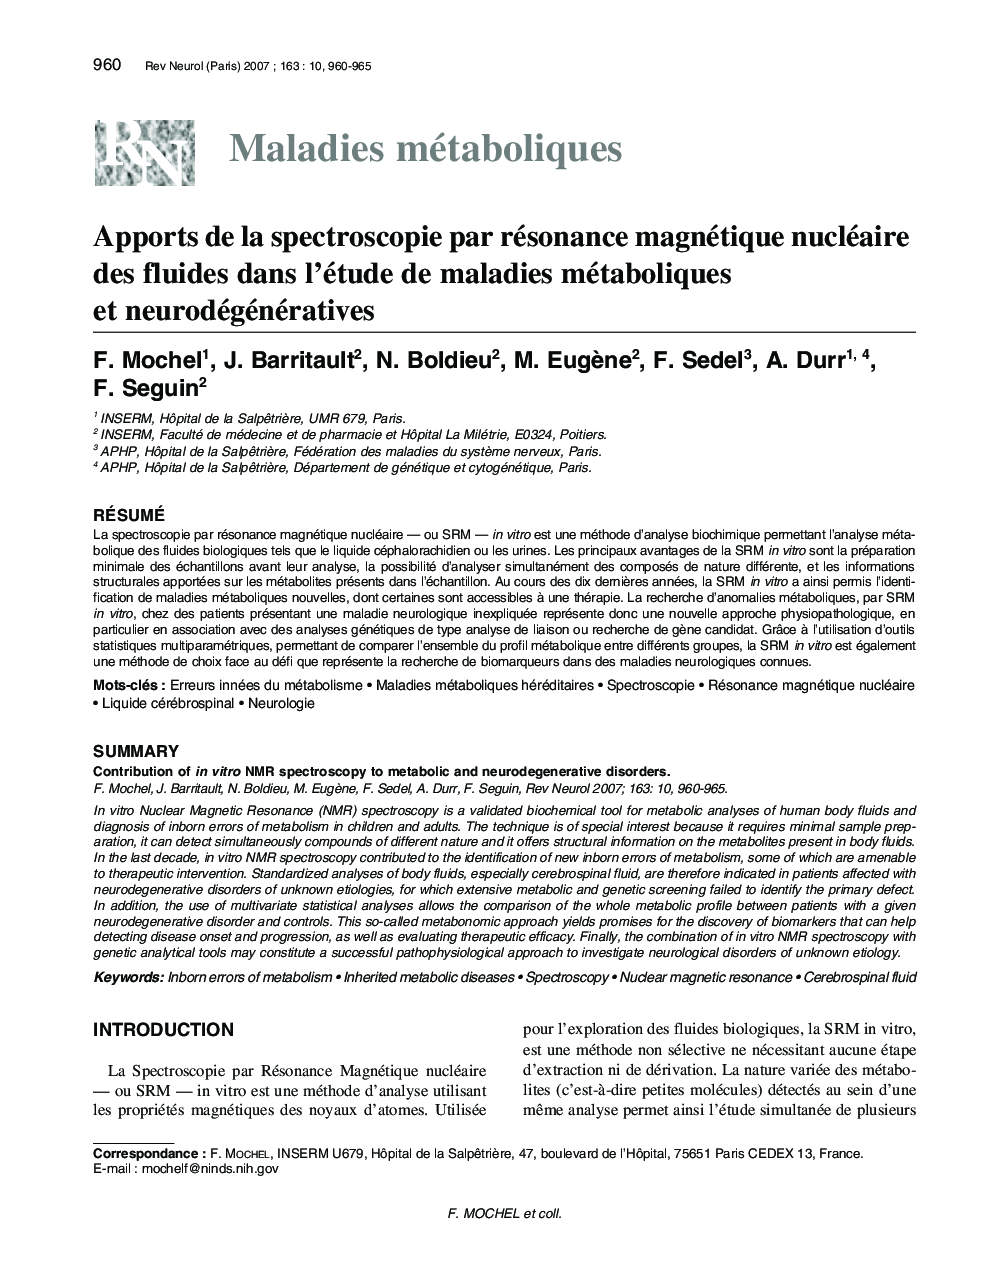 Apports de la spectroscopie par résonance magnétique nucléaire des fluides dans l'étude de maladies métaboliques et neurodégénératives